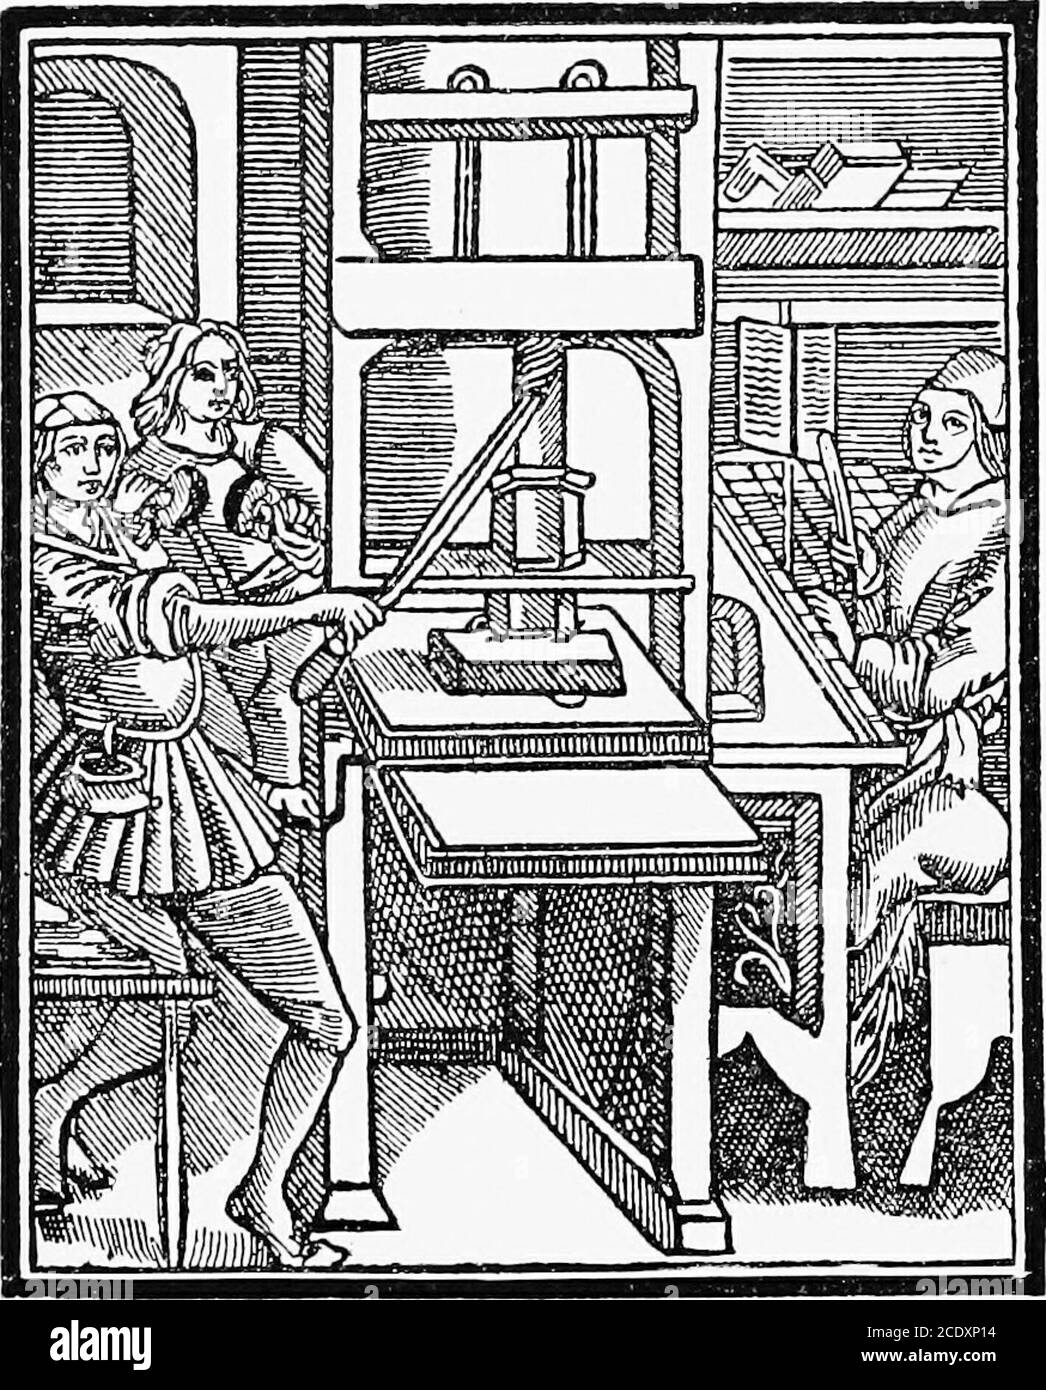 Un bref historique de la presse à imprimer et des améliorations des  machines à imprimer de l'époque de Gutenberg jusqu'à nos jours . f le  sept-seizième siècle, sans aucun changement matériel.